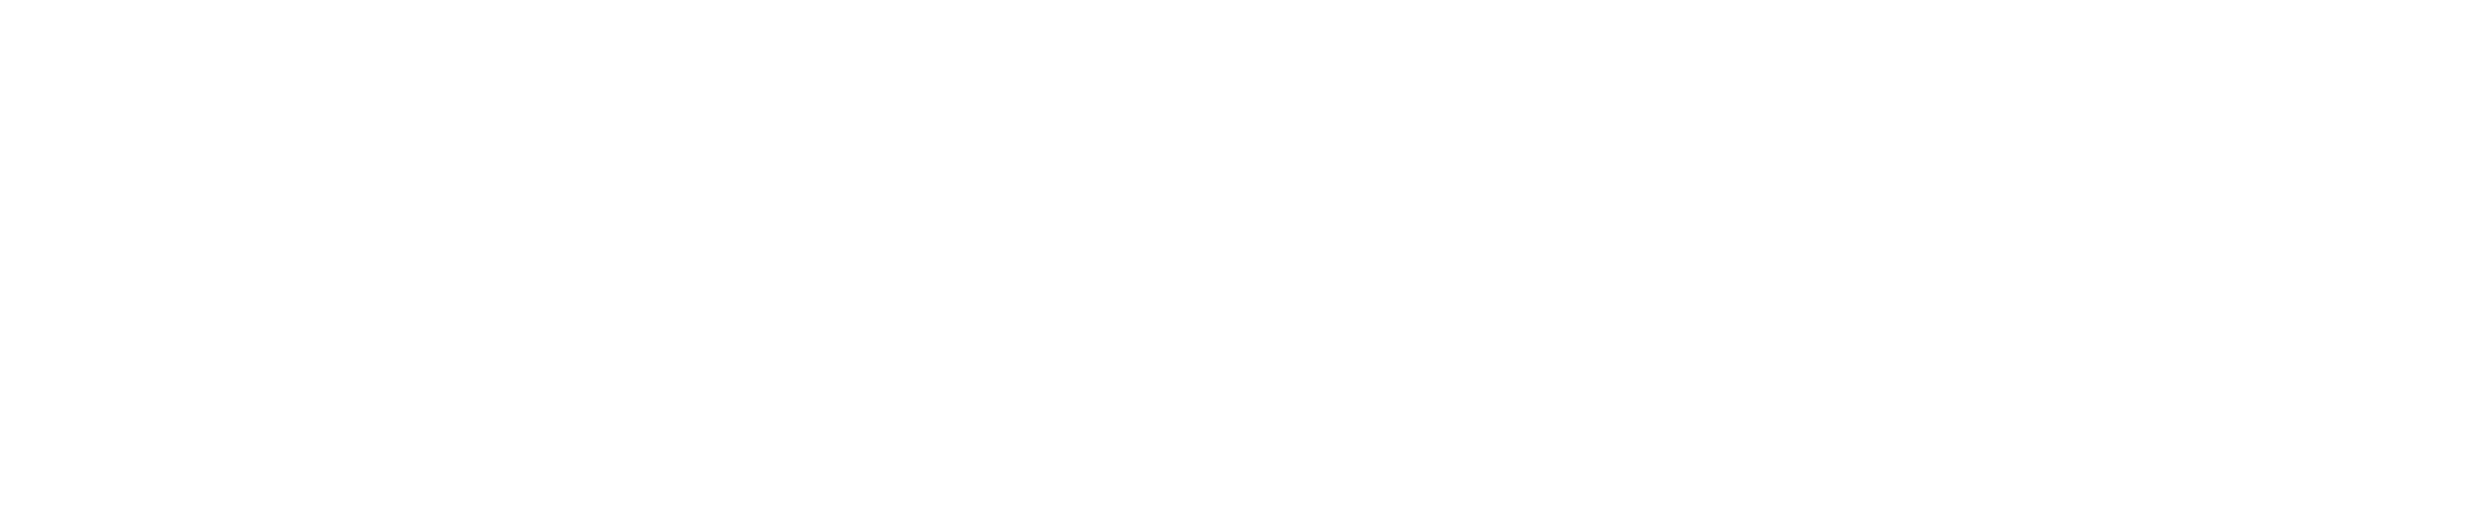 red-rock-branding-horizontal-logo-white-transparent